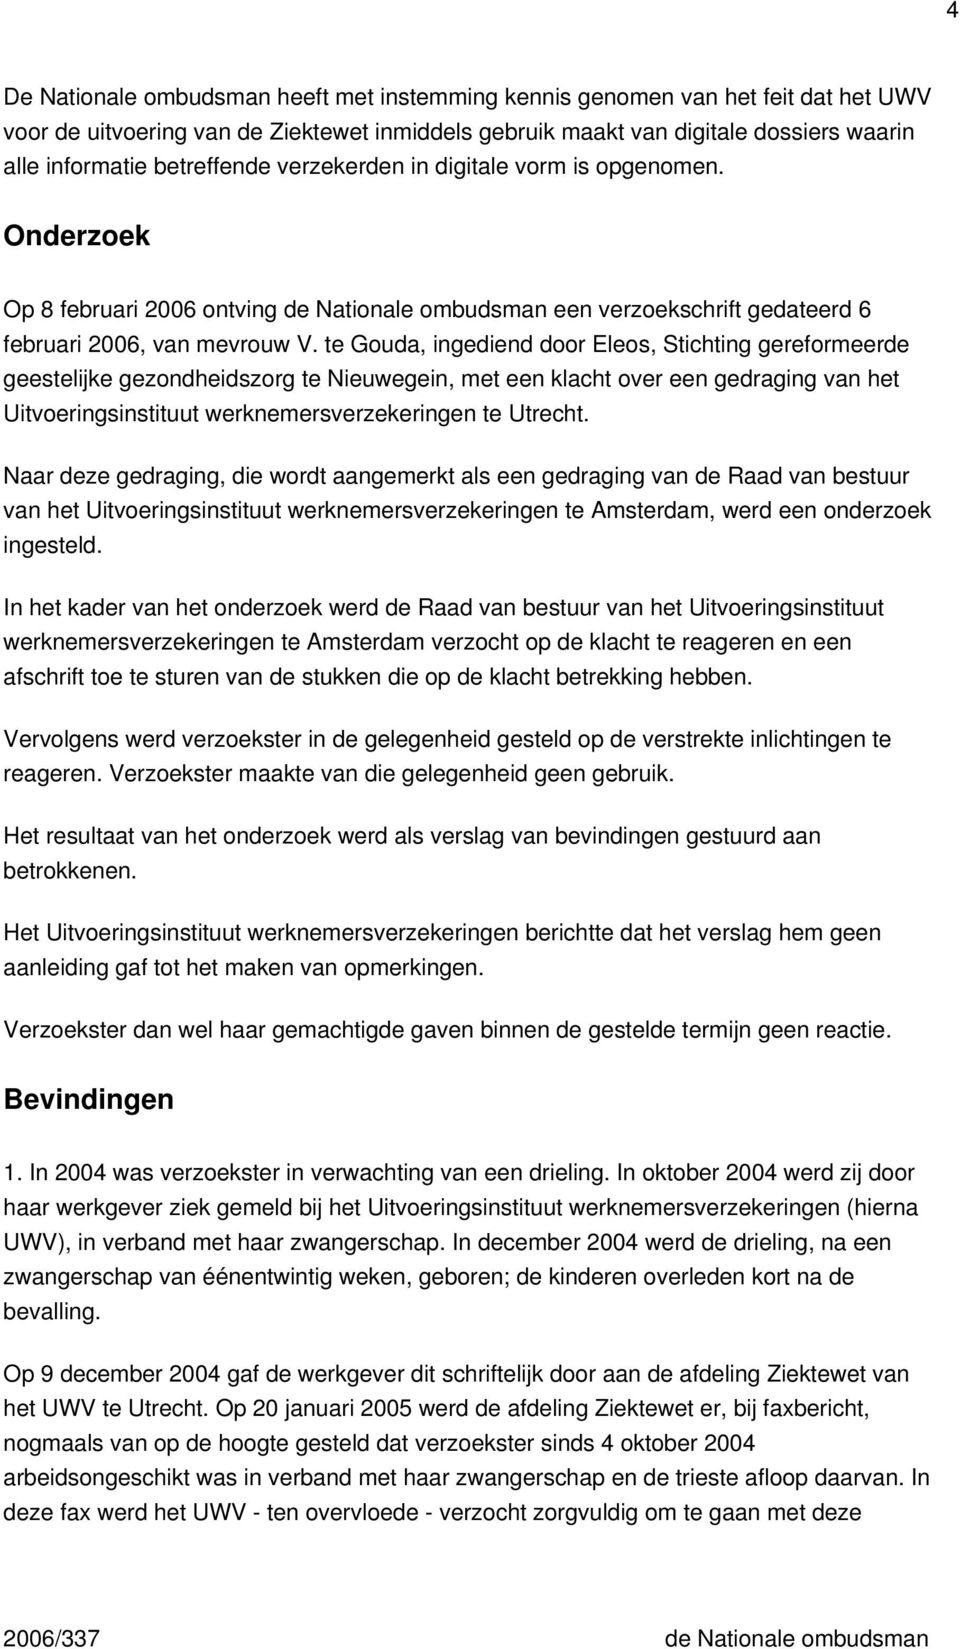 te Gouda, ingediend door Eleos, Stichting gereformeerde geestelijke gezondheidszorg te Nieuwegein, met een klacht over een gedraging van het Uitvoeringsinstituut werknemersverzekeringen te Utrecht.